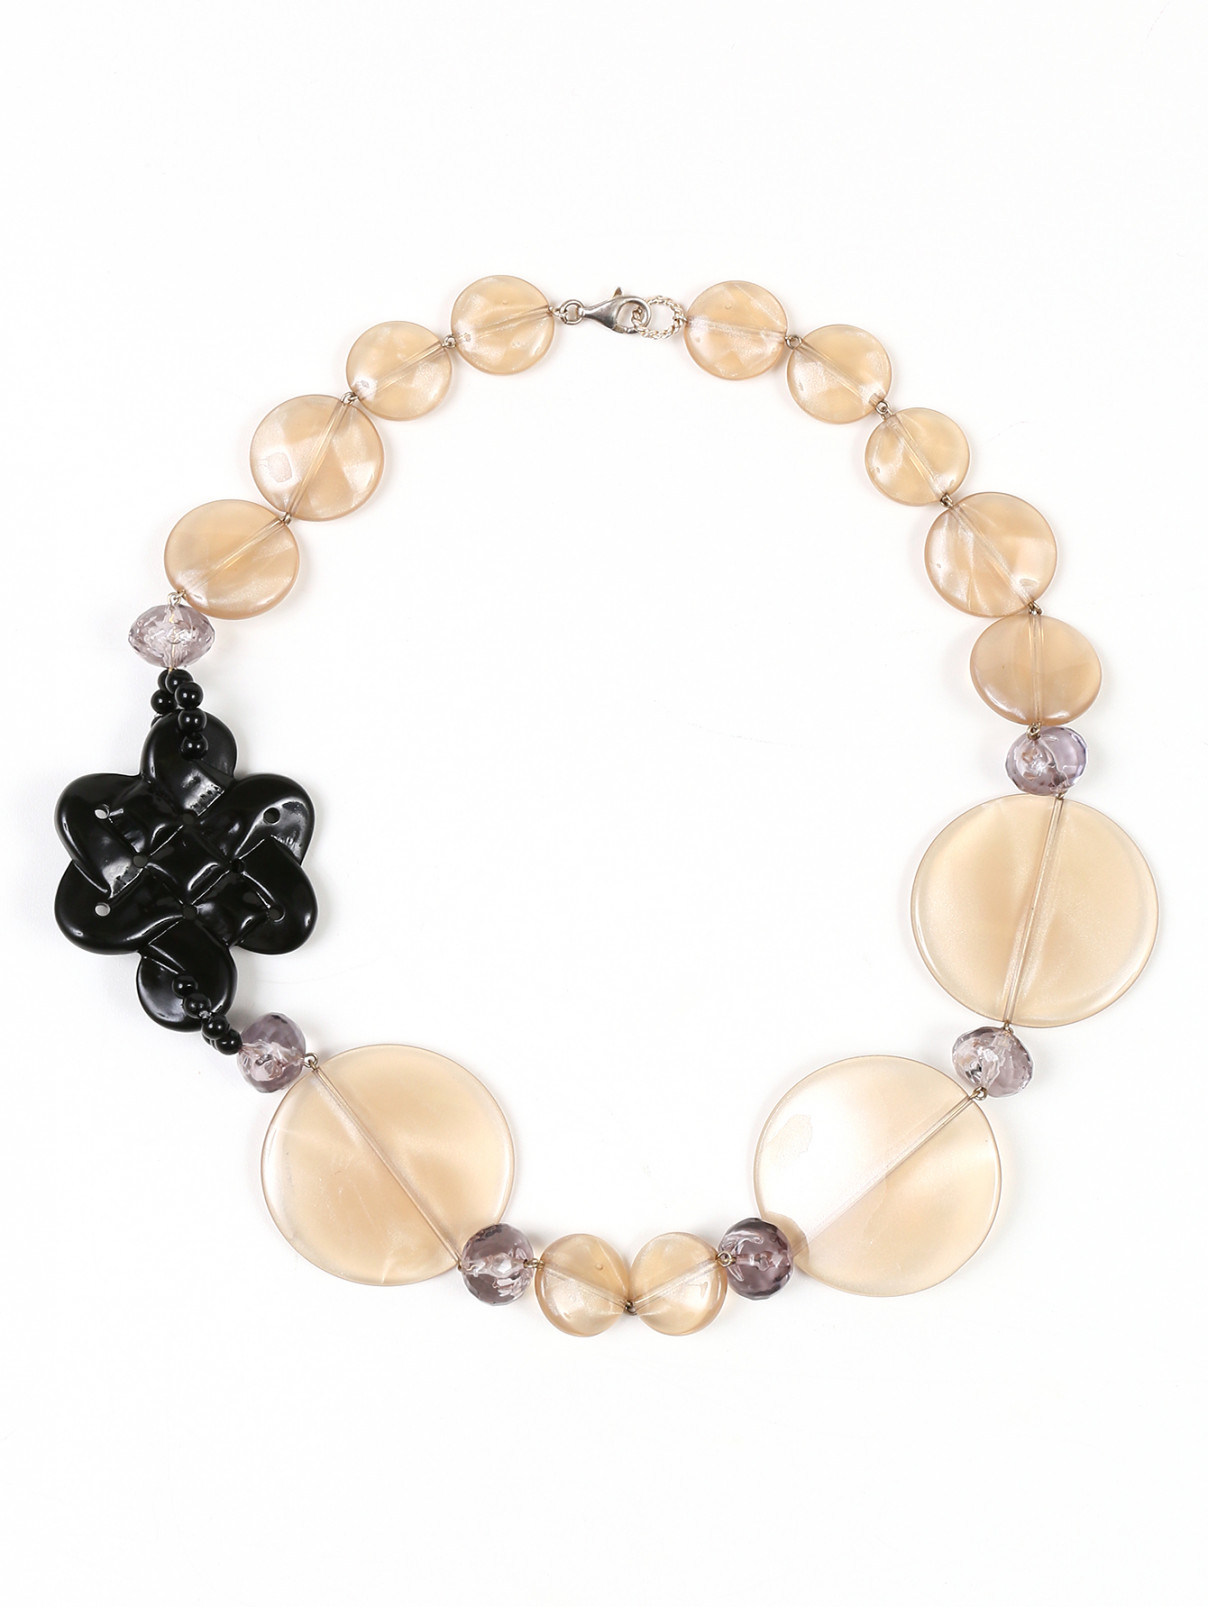 Ожерелье из бусин с декоративной розой Armani Collezioni  –  Общий вид  – Цвет:  Черный